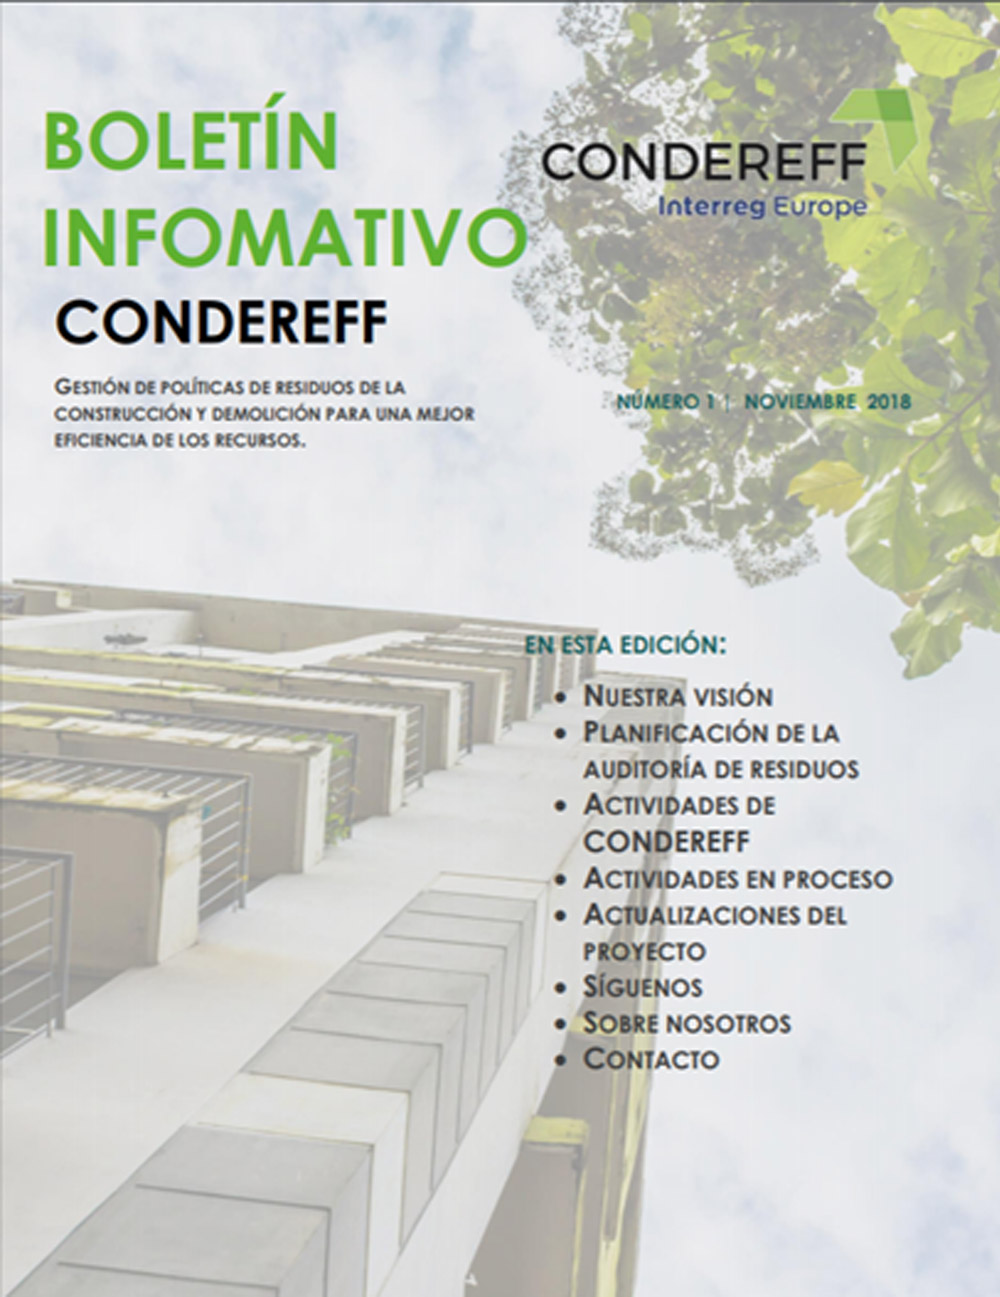 Proyecto CONDEREFF